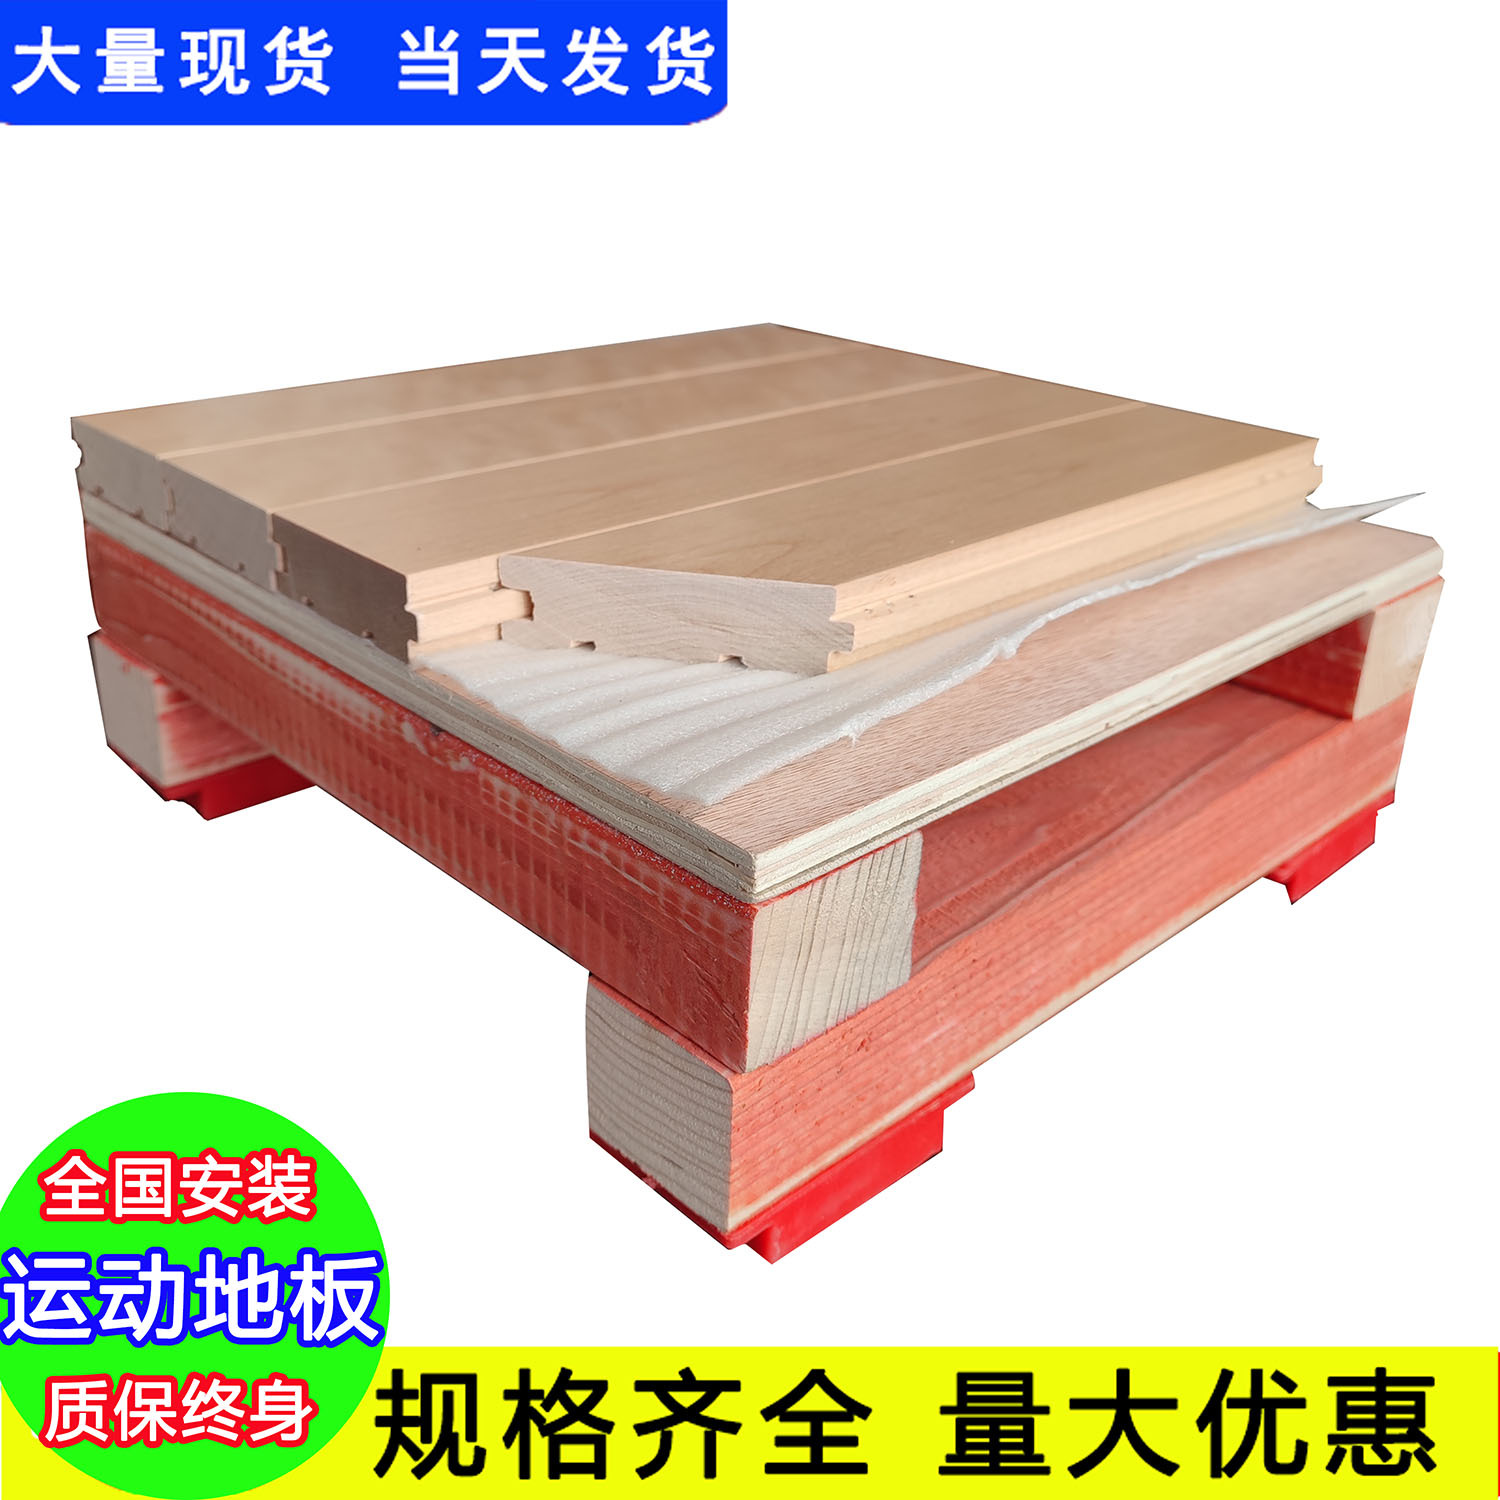 福建运动木地板_运动和地板之间的关系_运动木地板是属于什么地板